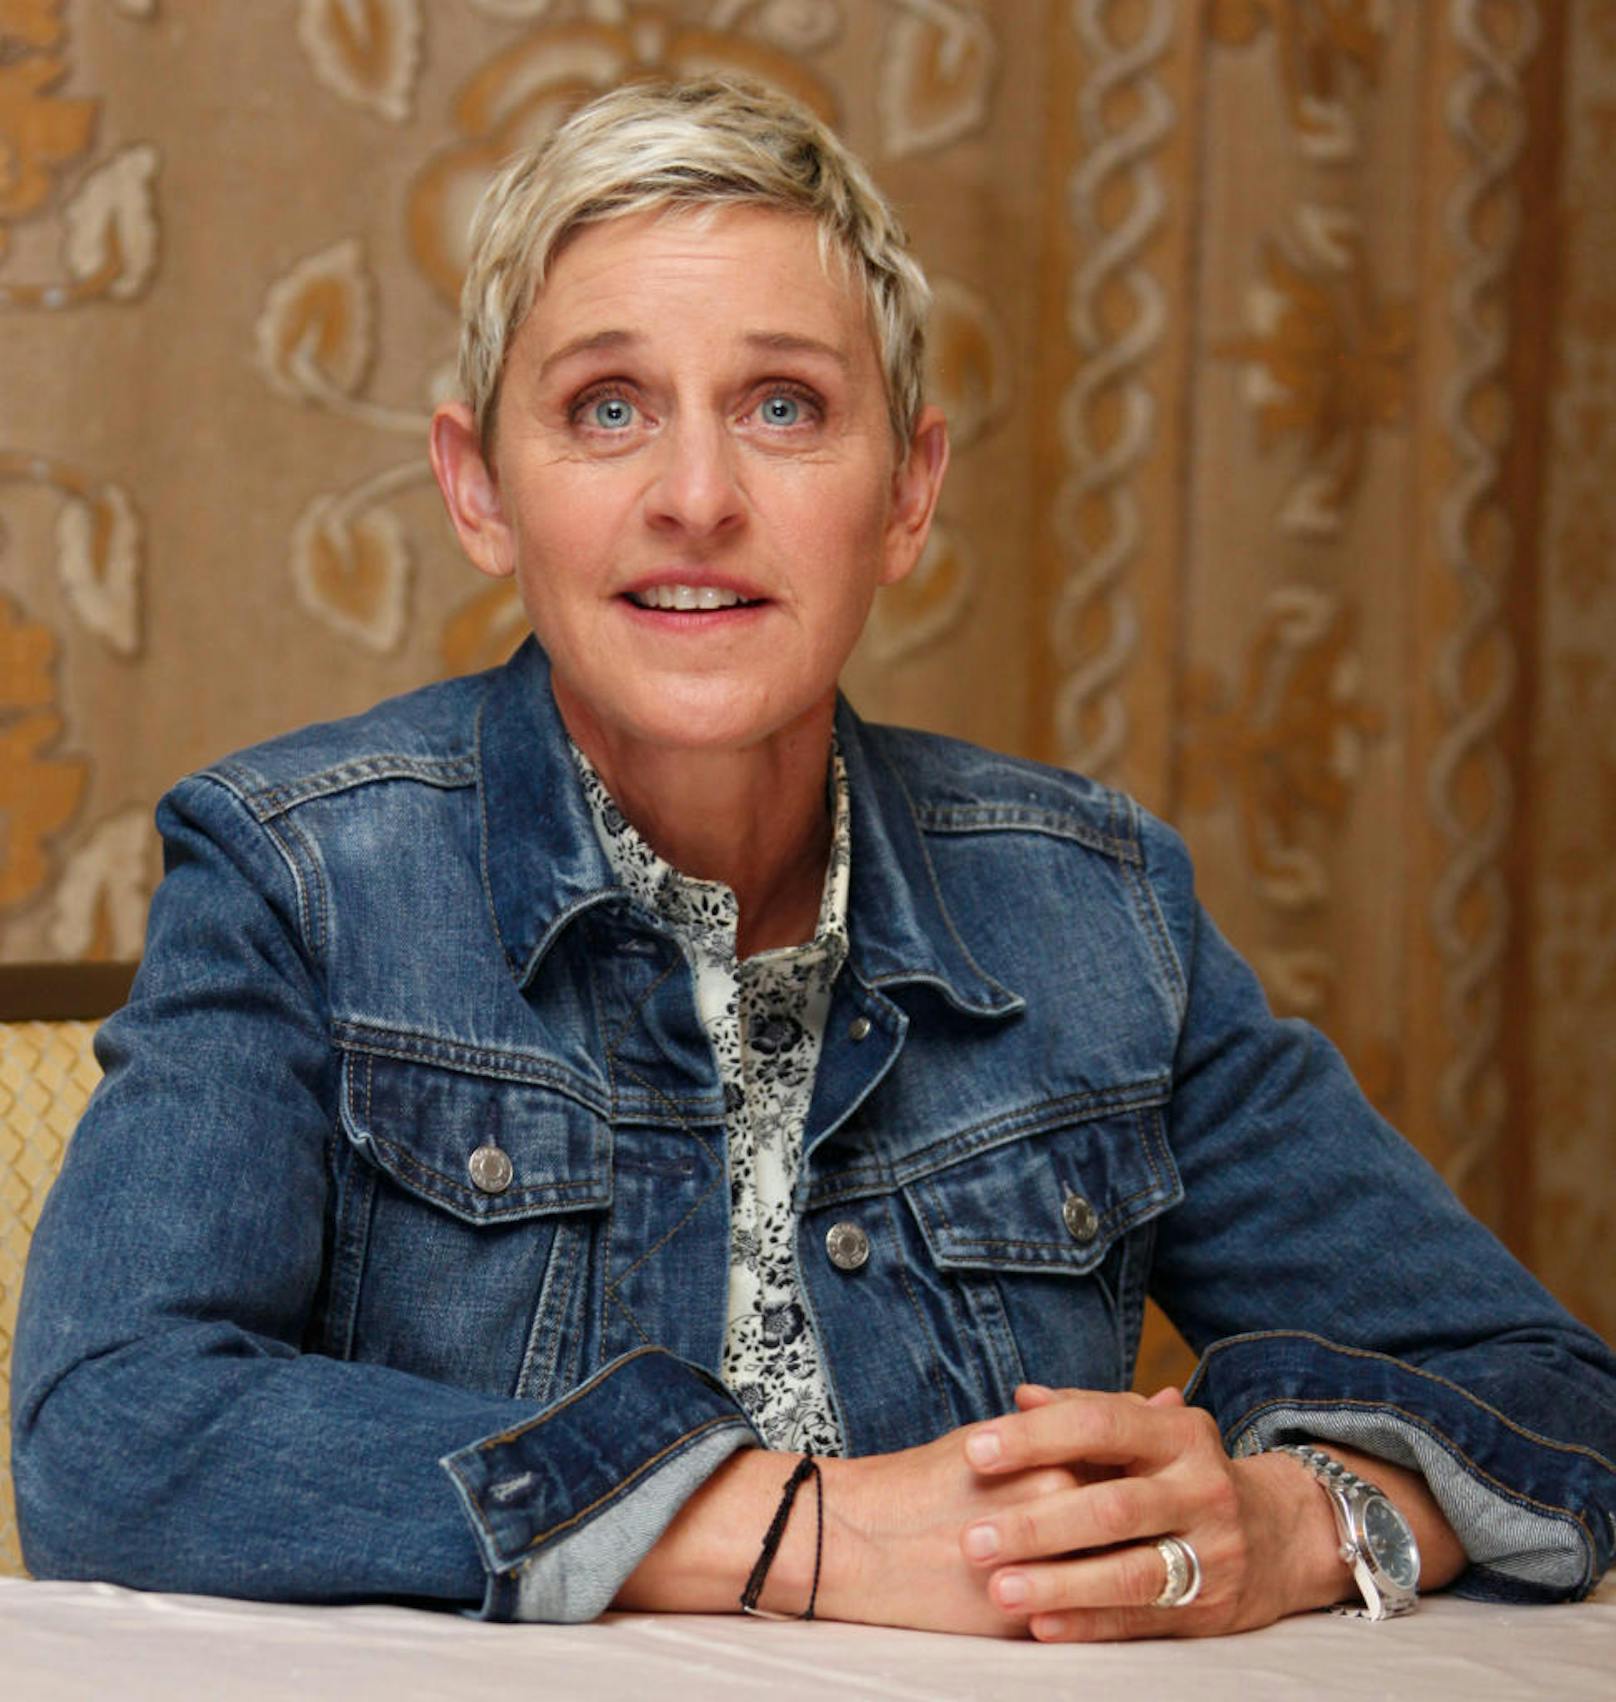  Ellen DeGeneres